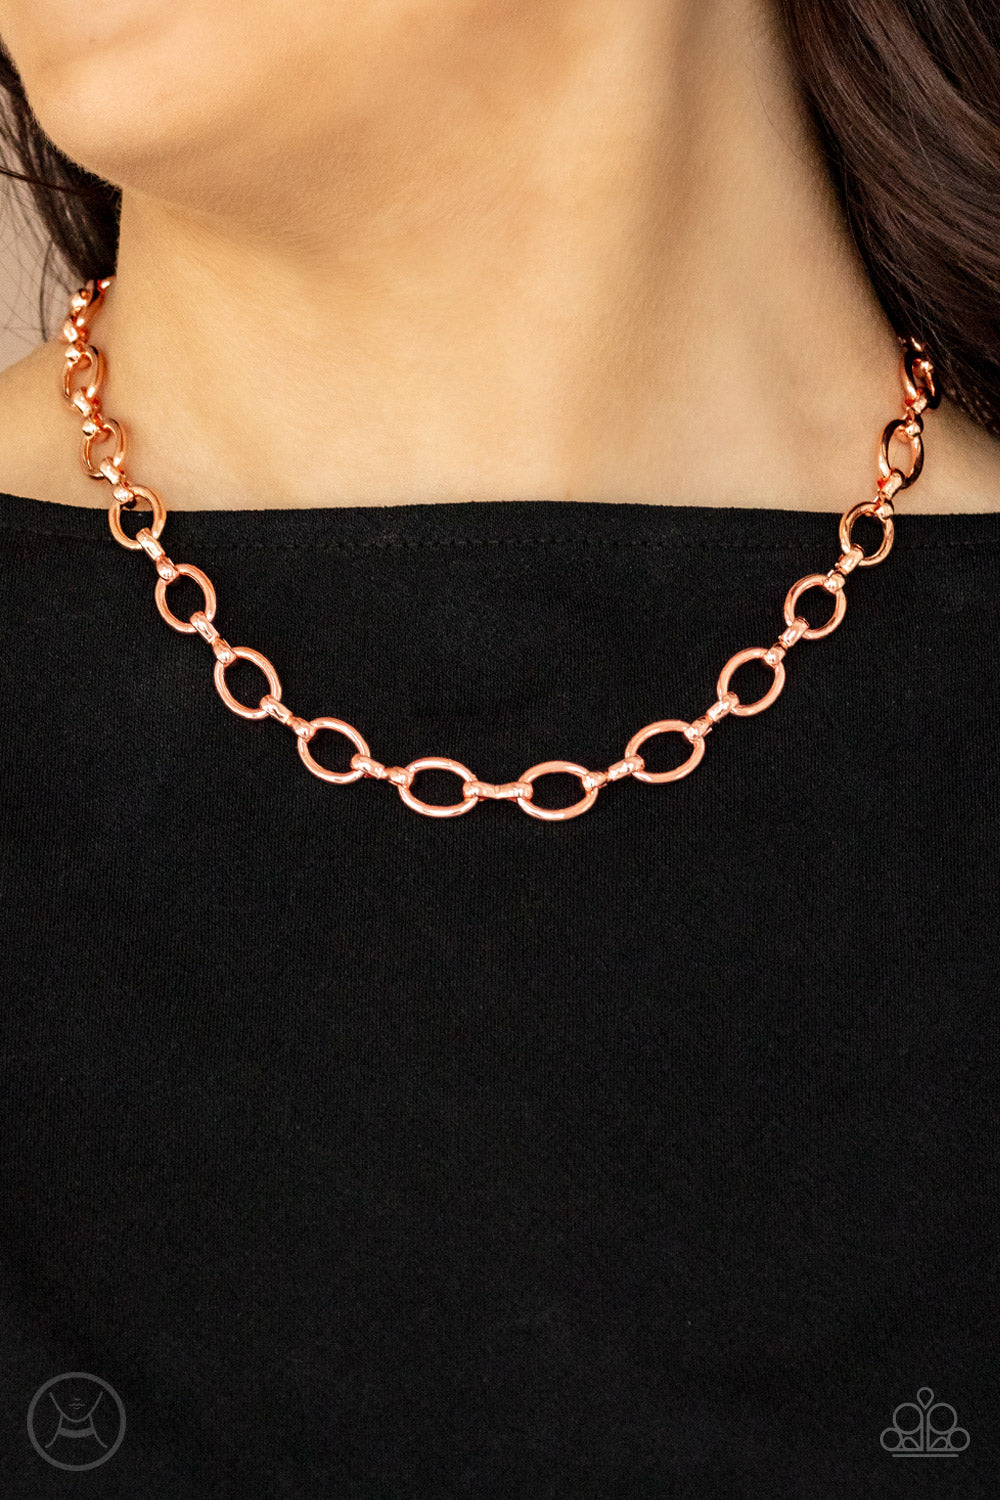 Craveable Couture - Copper Choker Necklace Paparazzi